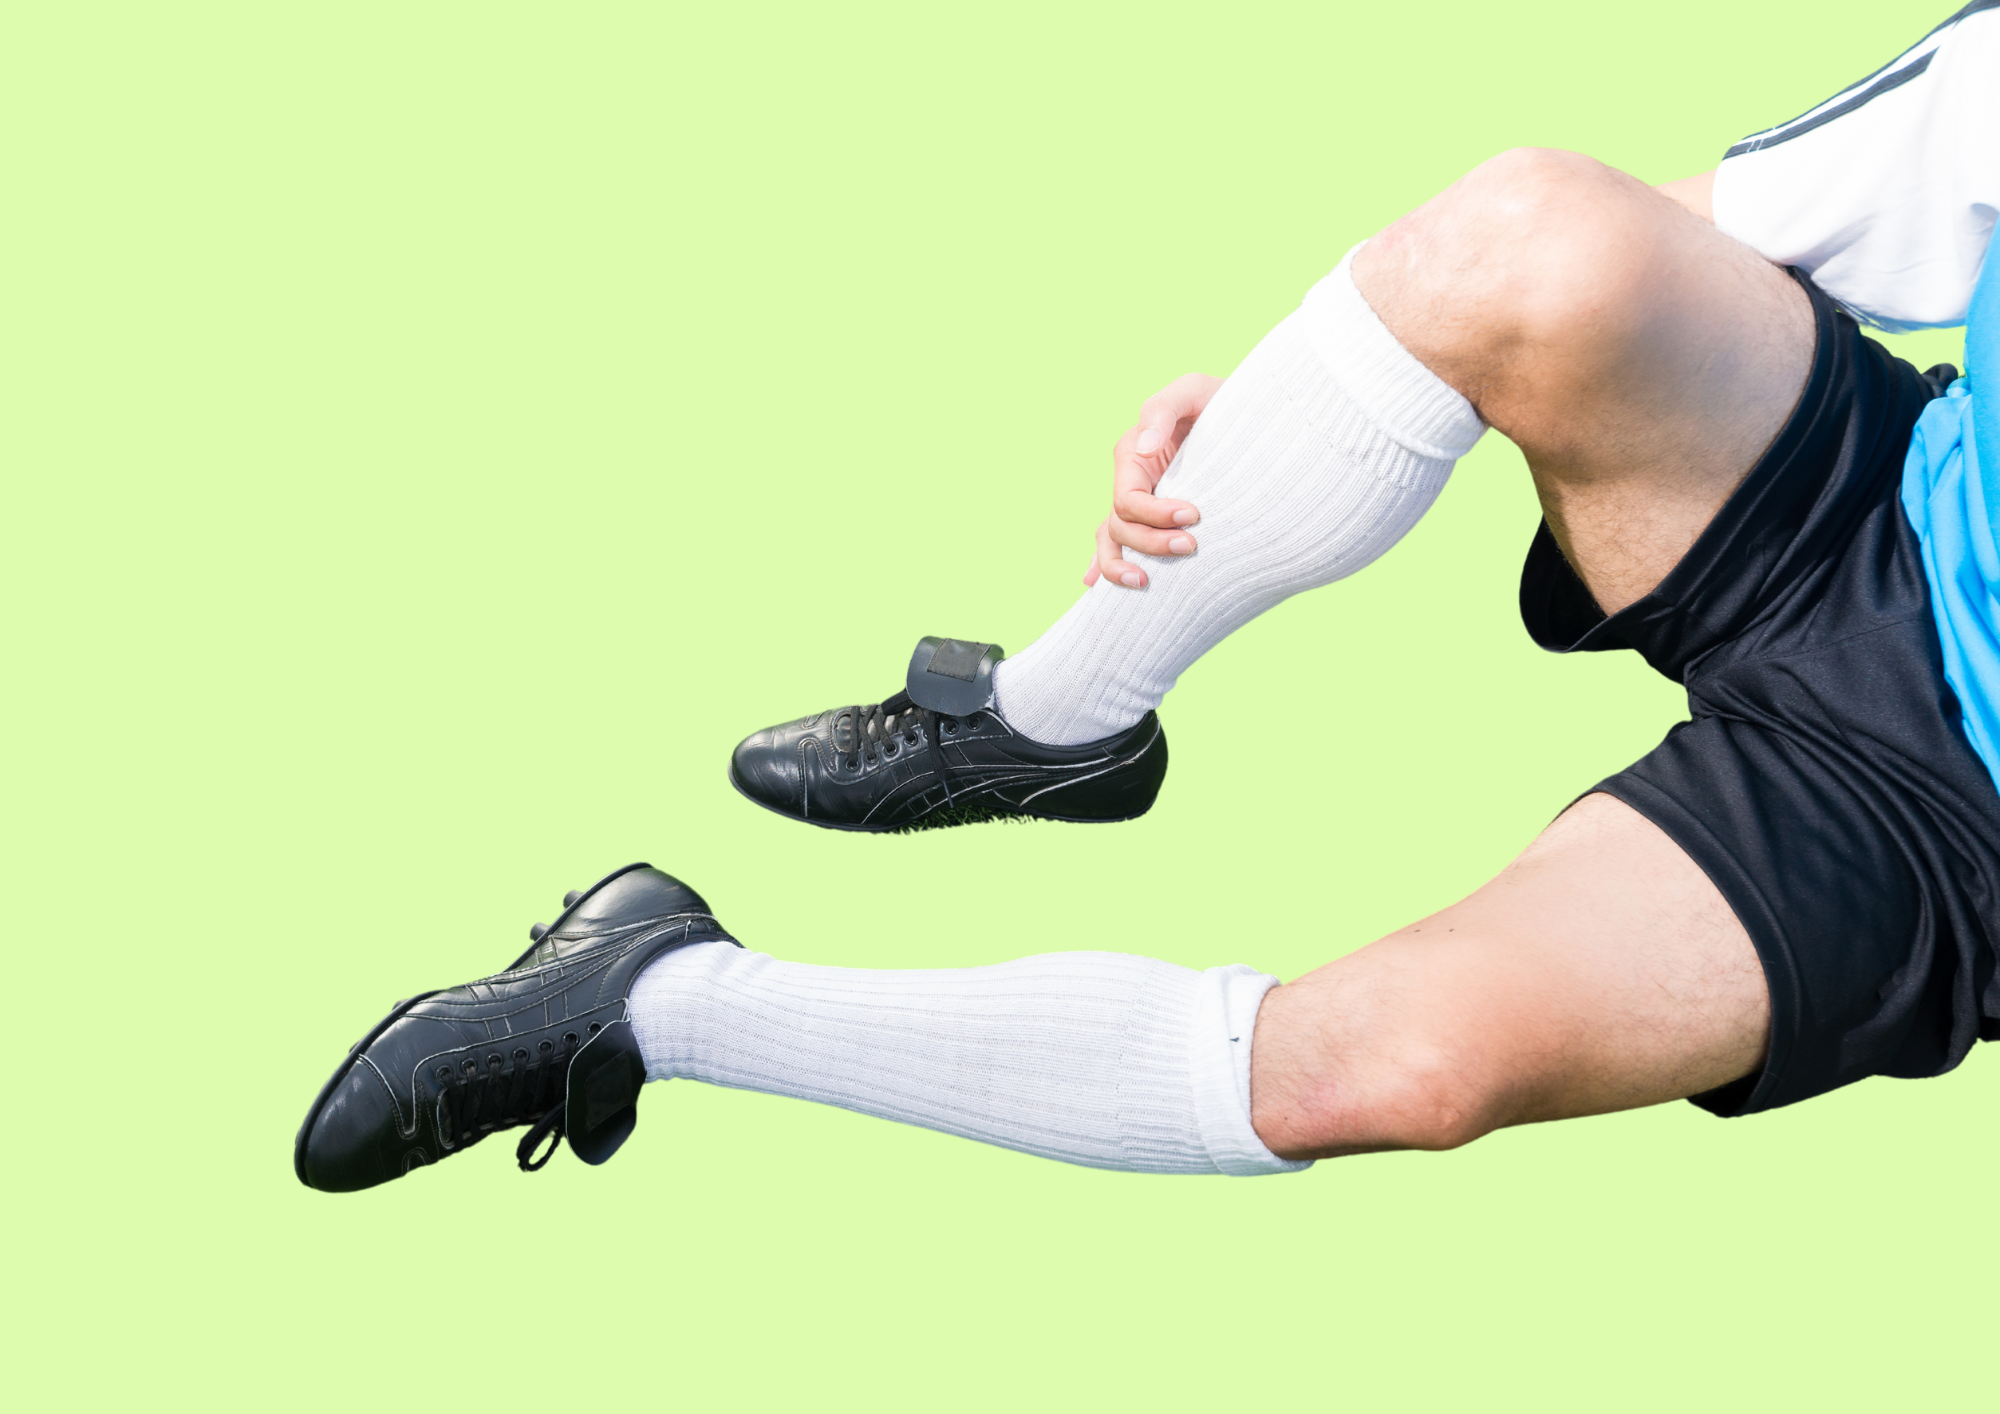 Fussballspieler sitzt auf dem Boden und fasst sich ans schmerzende Schienbein. Grüner Hintergrund.